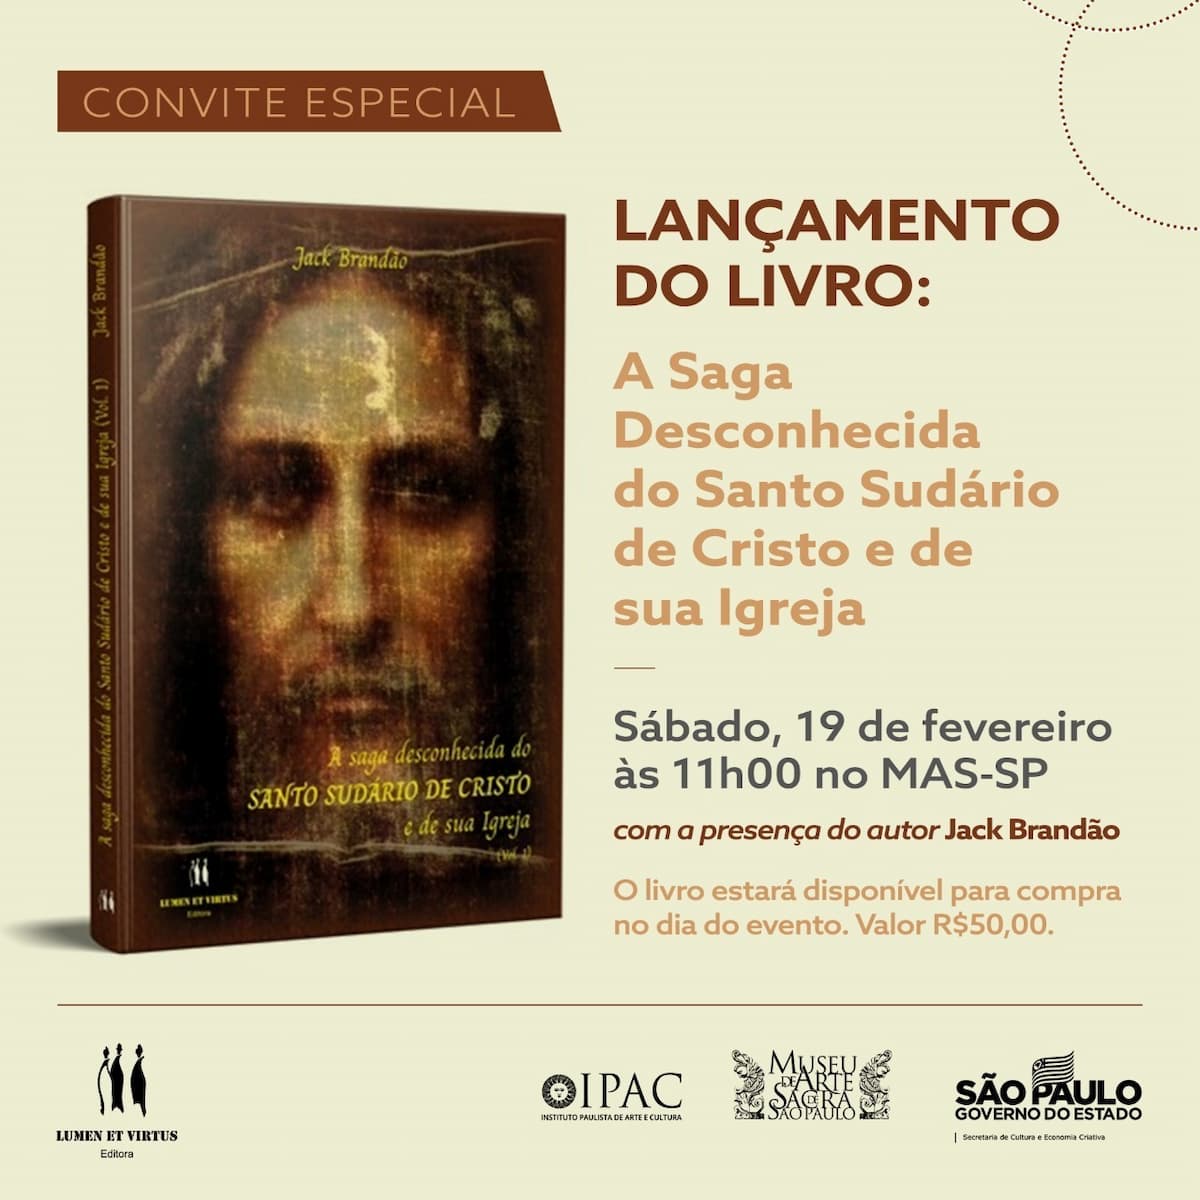 Livro "A saga desconhecida do SUDÁRIO DE CRISTO e de sua Igreja", book - cover, invitation. Disclosure.